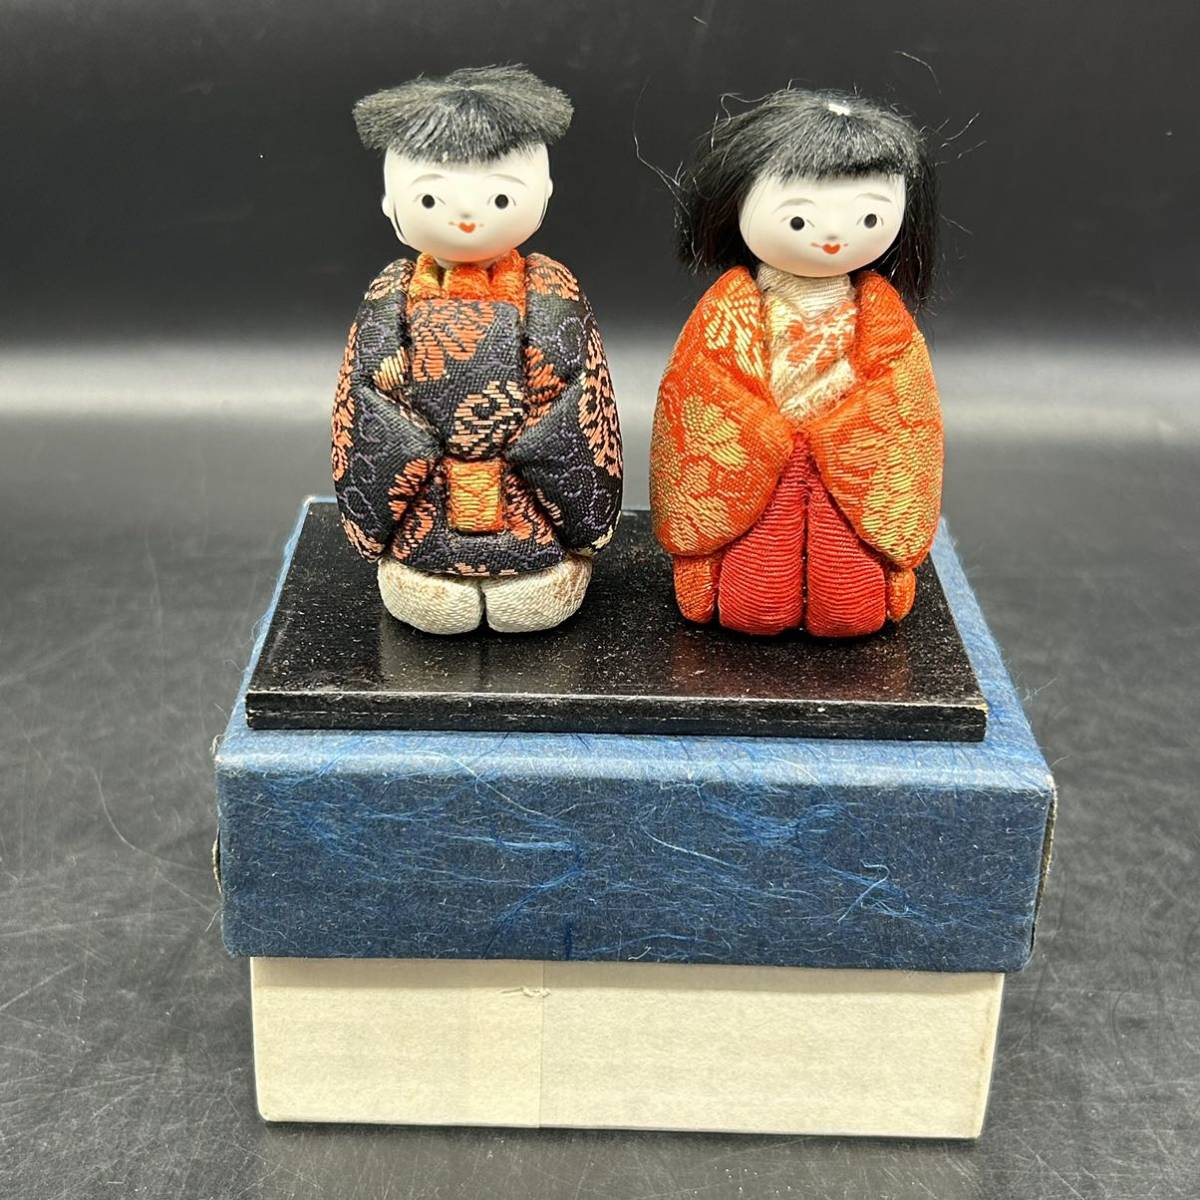 किमेकोमी गुड़िया, अवधि जापानी गुड़िया, हिना गुड़िया, नर और मादा जोड़े, बाल गुड़िया, गुड़िया, मूर्तियां, आंतरिक भाग, प्राचीन H3, गुड़िया, चरित्र गुड़िया, जापानी गुड़िया, किमेकोमी गुड़िया